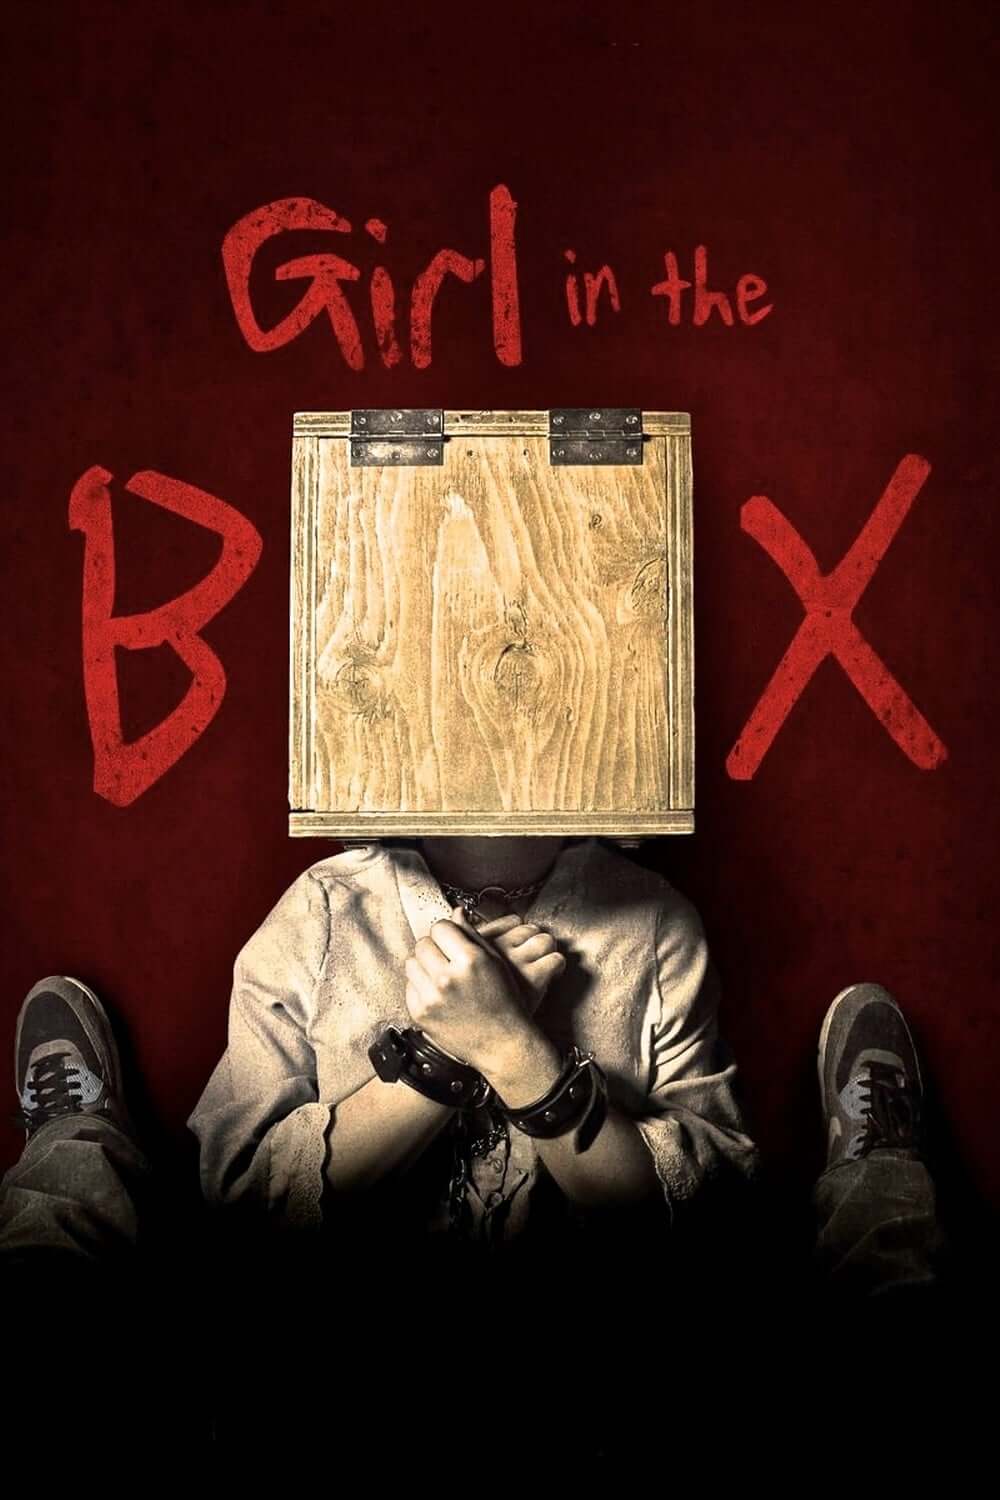 دختری در جعبه (Girl in the Box)